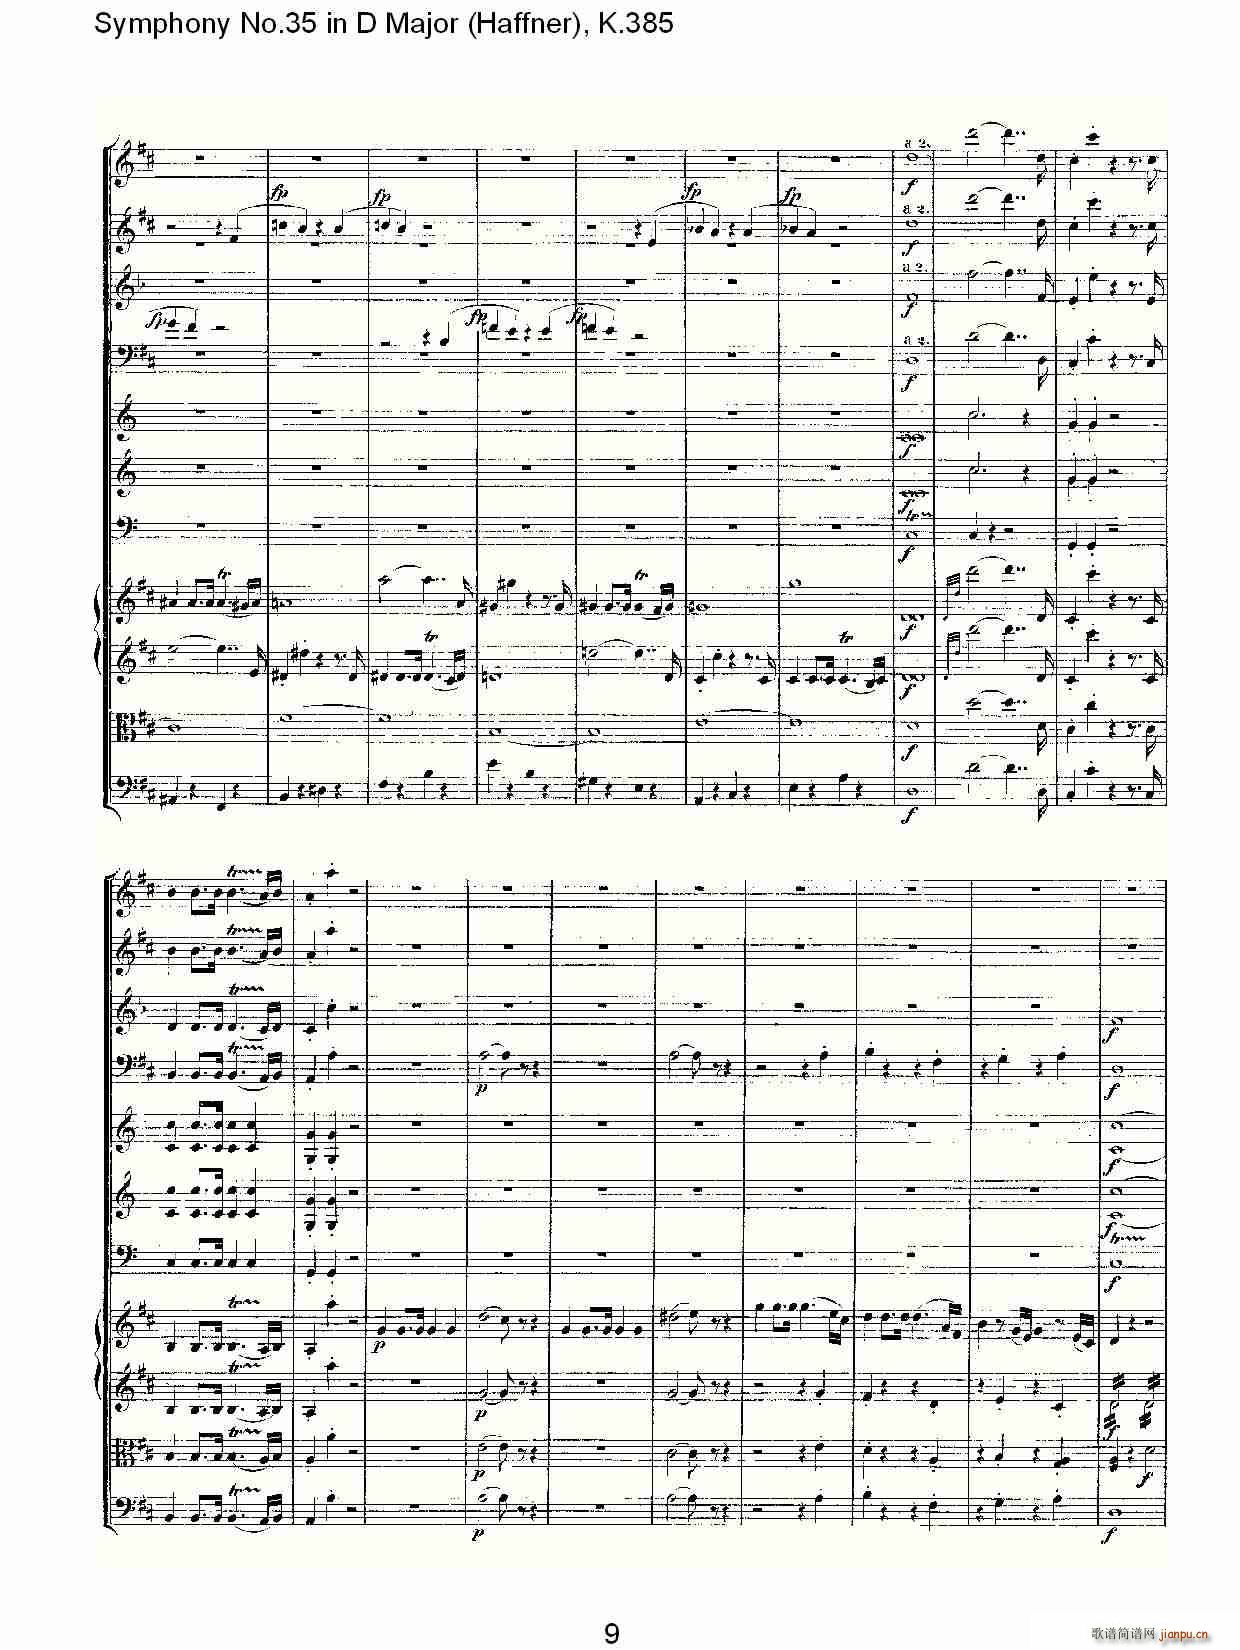 Symphony No.35 in D Major, K.385(ʮּ)9